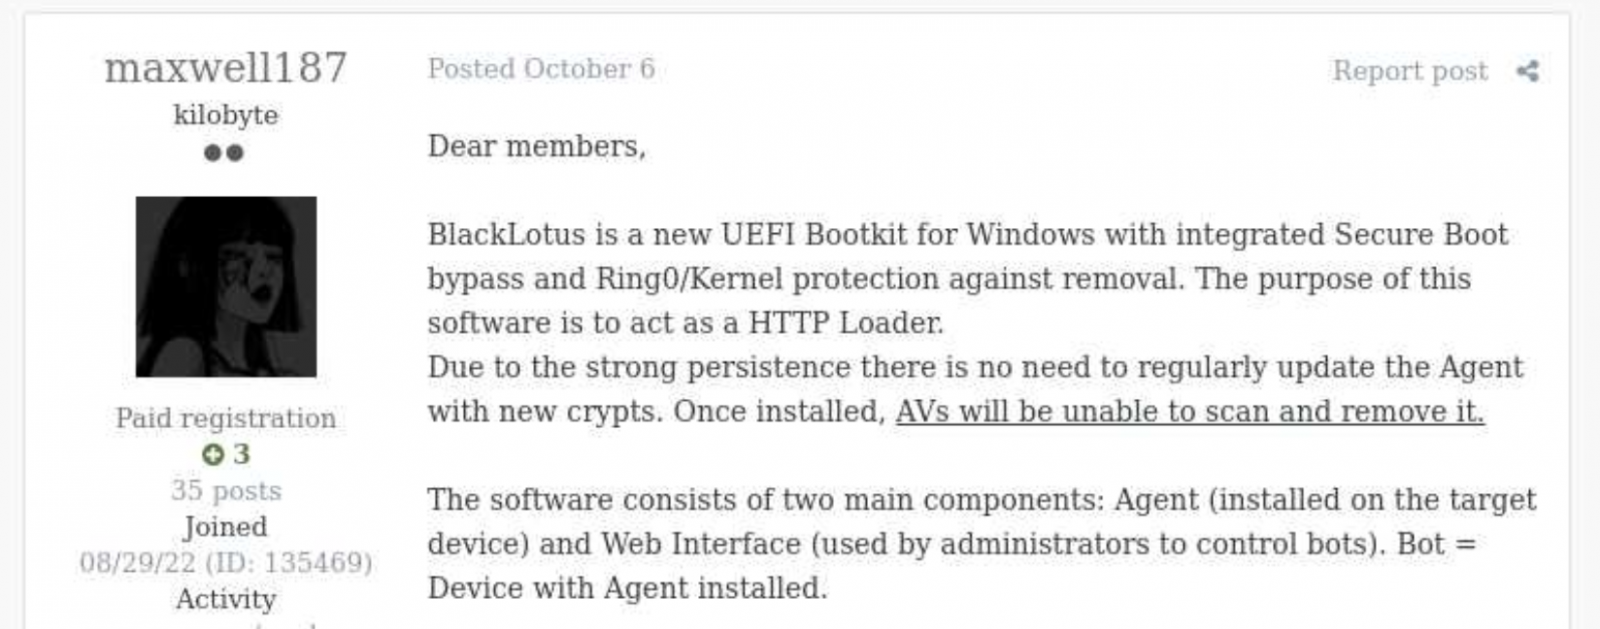 BlackLotus bootkit promoted on hacker forums